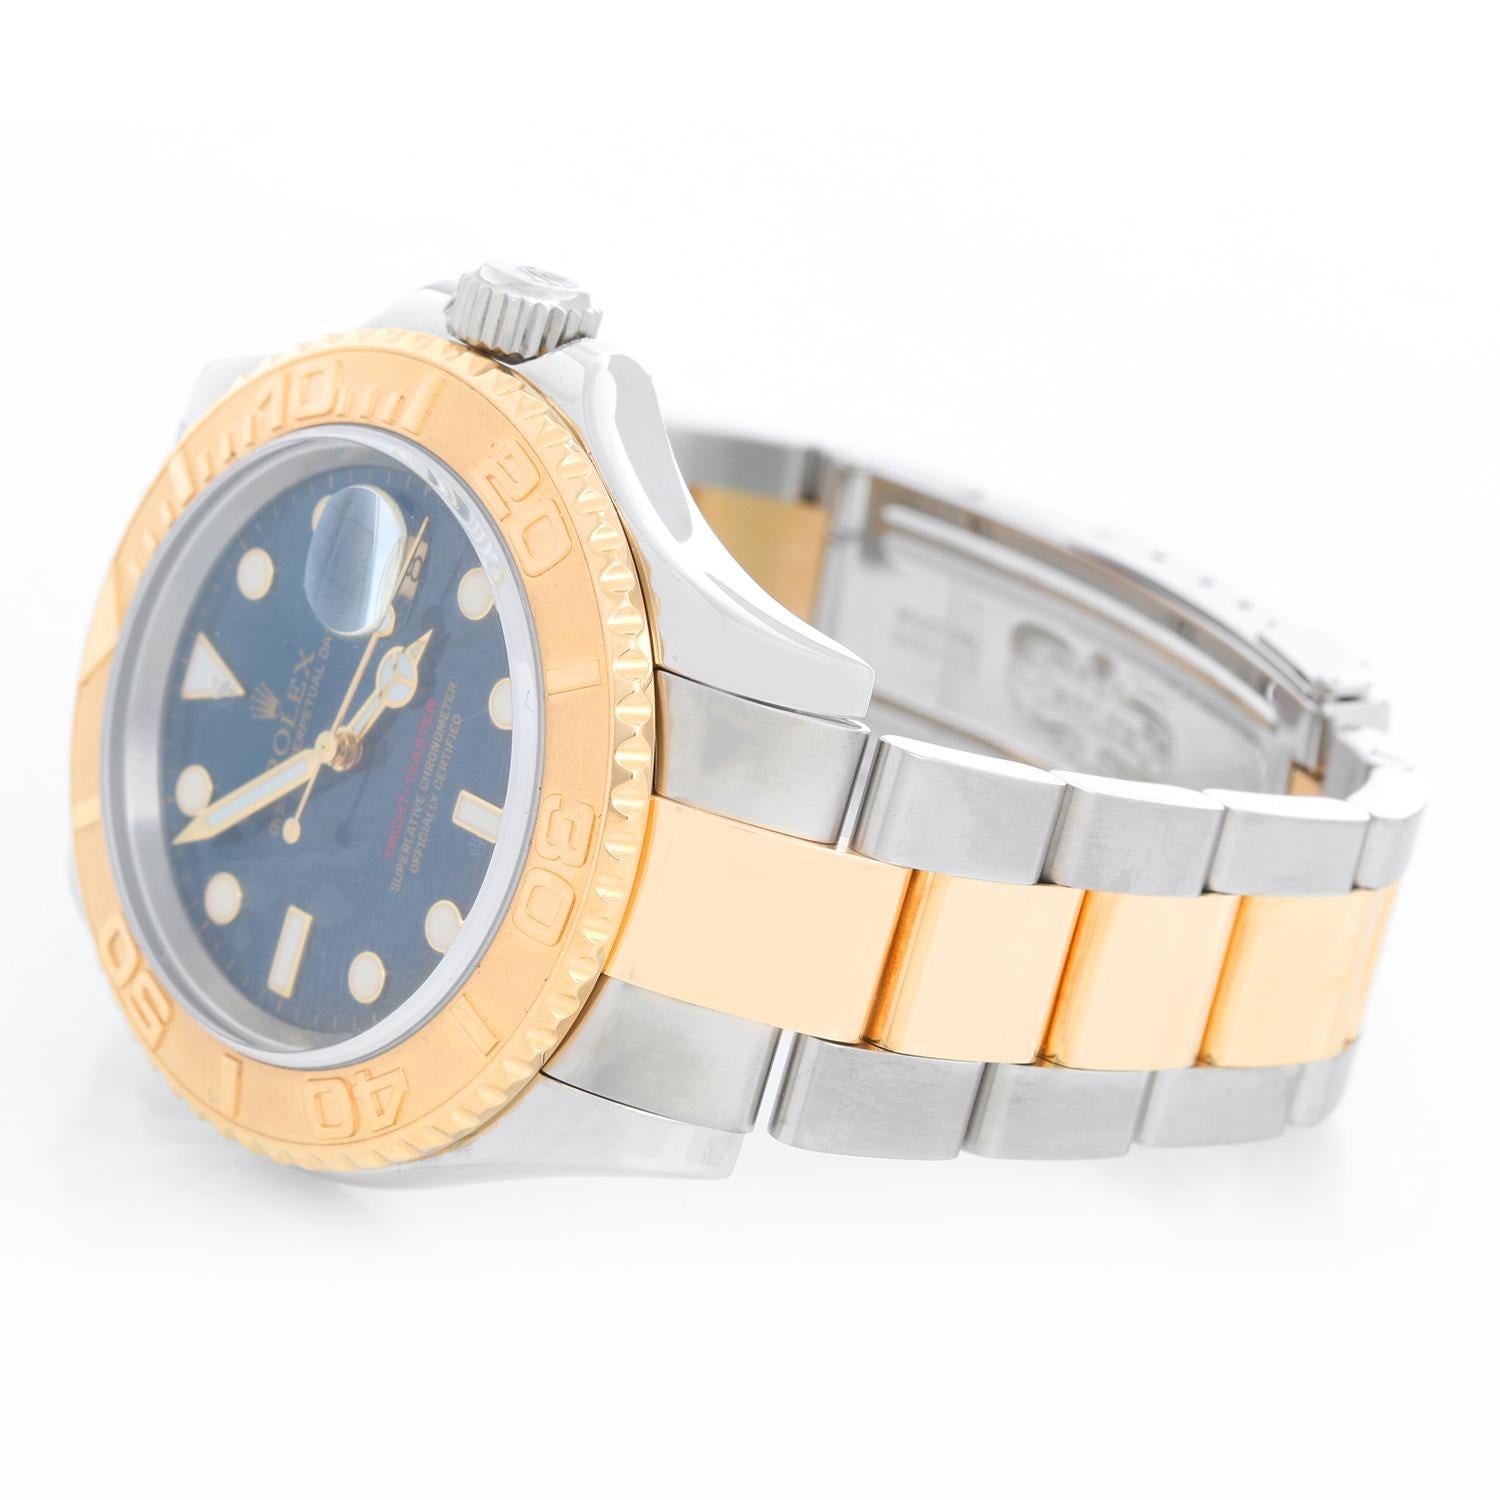 Rolex Yacht-Master Steel & Gold Men's 2-Tone Watch 16623 - Remontage automatique, 31 rubis, Quickset, verre saphir. Boîtier en acier inoxydable avec lunette en or jaune 18 carats ; gravure sur la lunette intérieure   (40 mm de diamètre). Cadran bleu